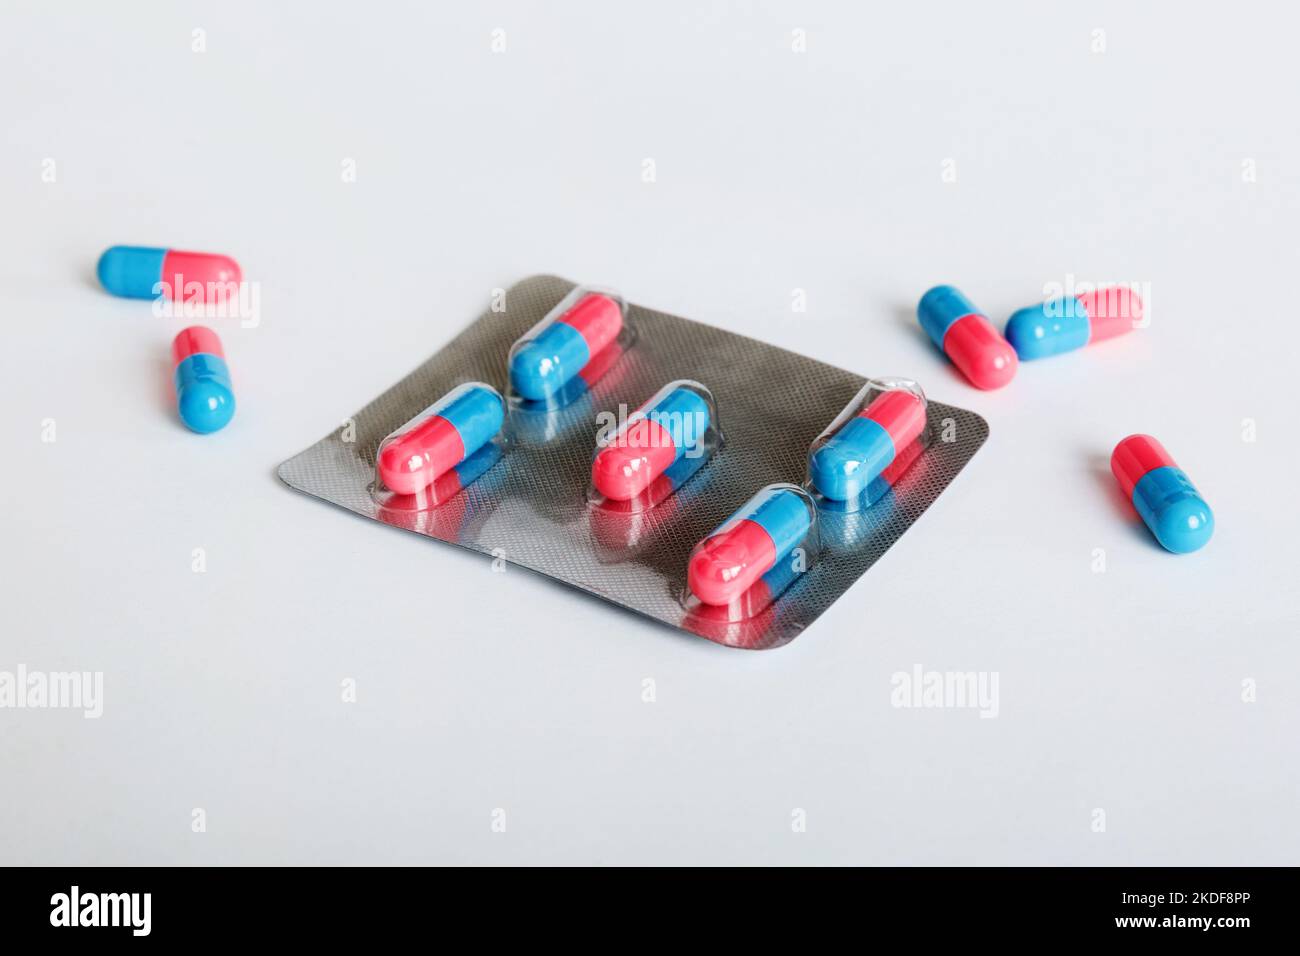 Medicine Pillen auf einem hellen Hintergrund. Medikamente und verschreibungspflichtige Pillen flach legen Hintergrund. Blaue und rosafarbene Tabletten in Blister. Stockfoto